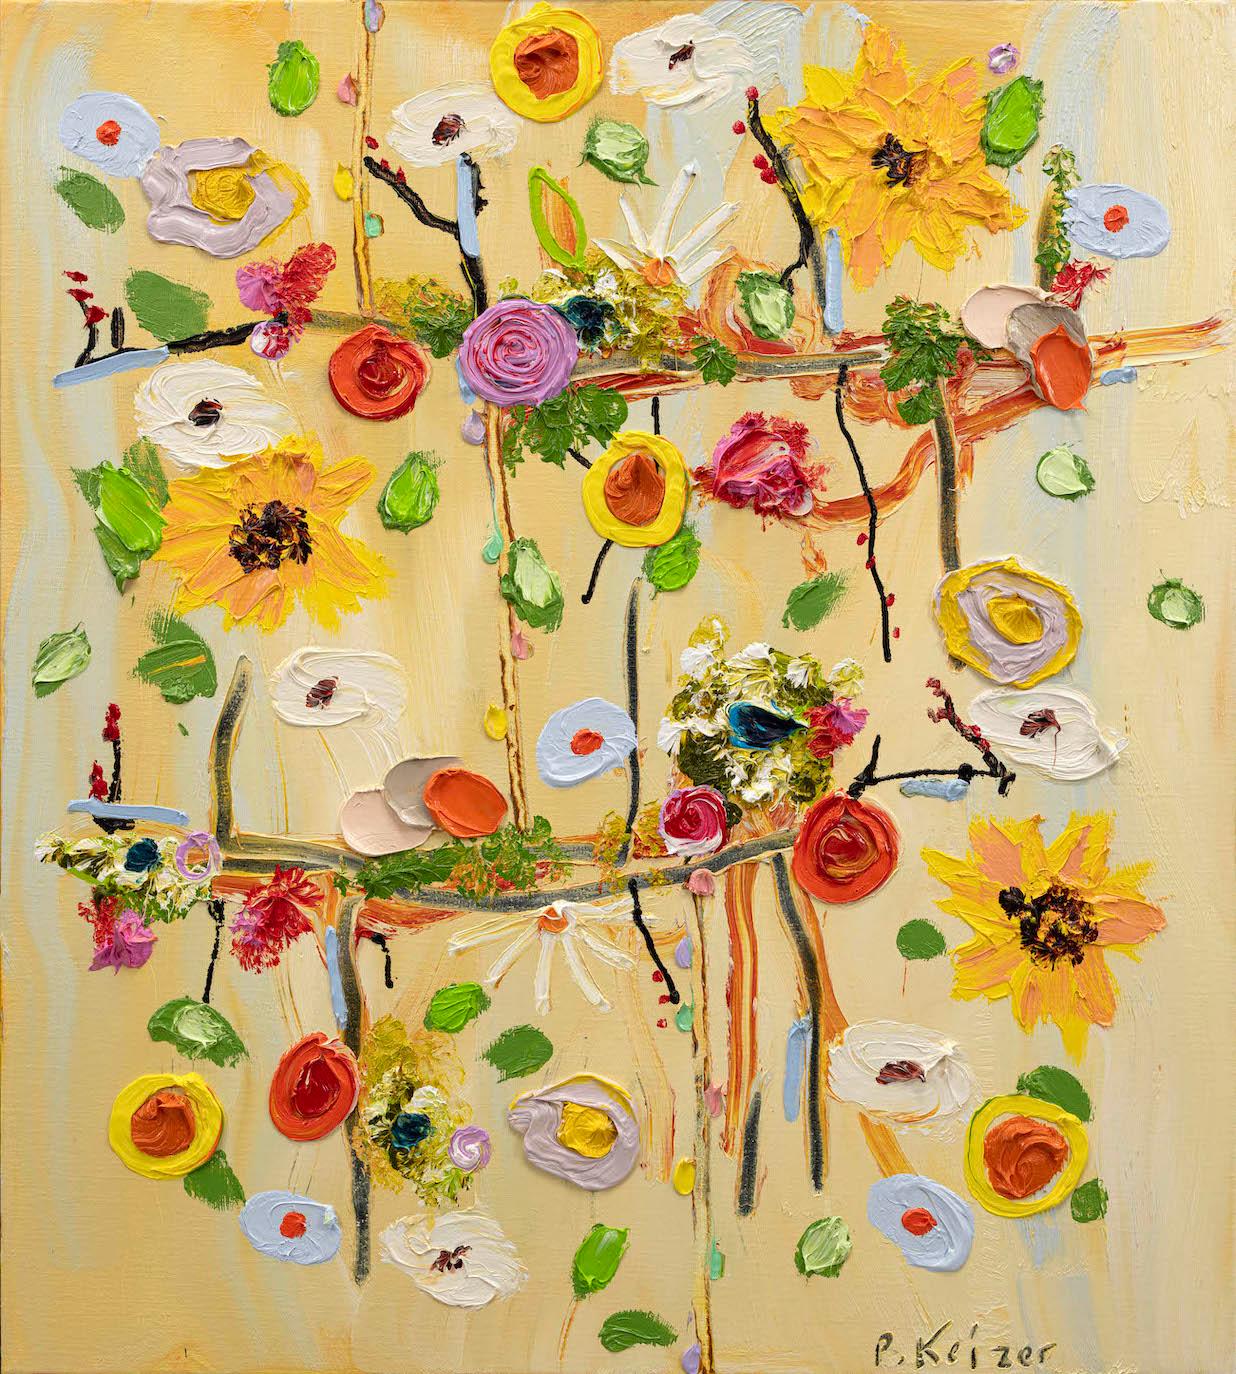 "Locker und fest", Ölgemälde auf Leinwand von Peter Keizer.

Peter Keizer ist ein niederländischer Maler und Bildhauer, geboren 1961. Er studierte an der Rijksakademie in Amsterdam und begann nach seinem Abschluss am Royal College of Art in London